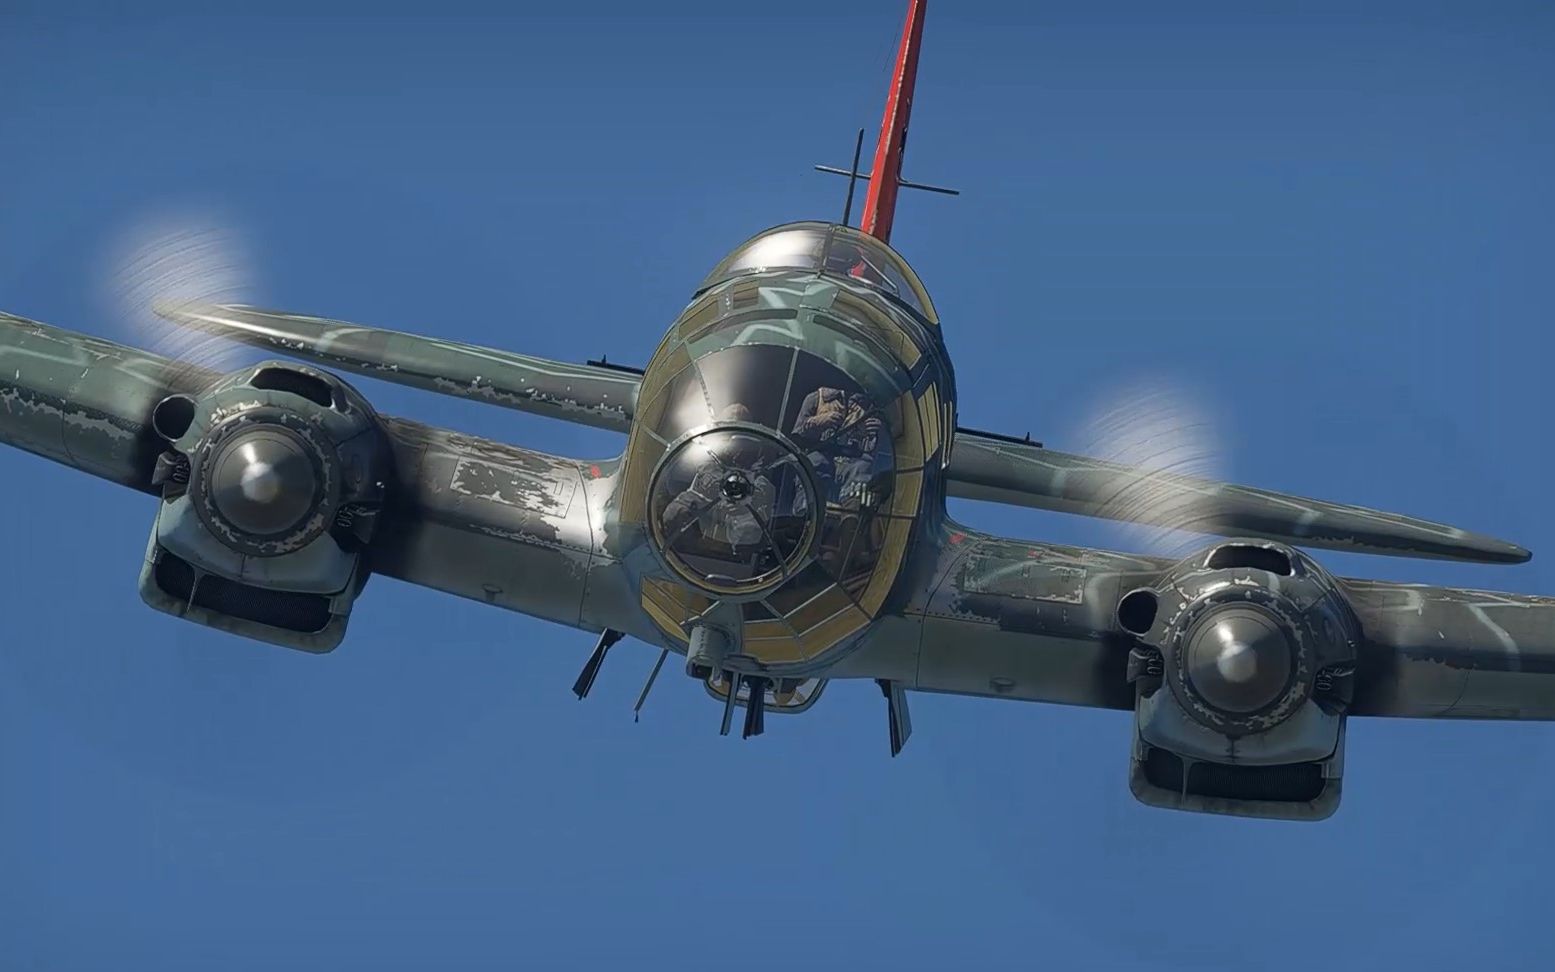 He-277轰炸机图片